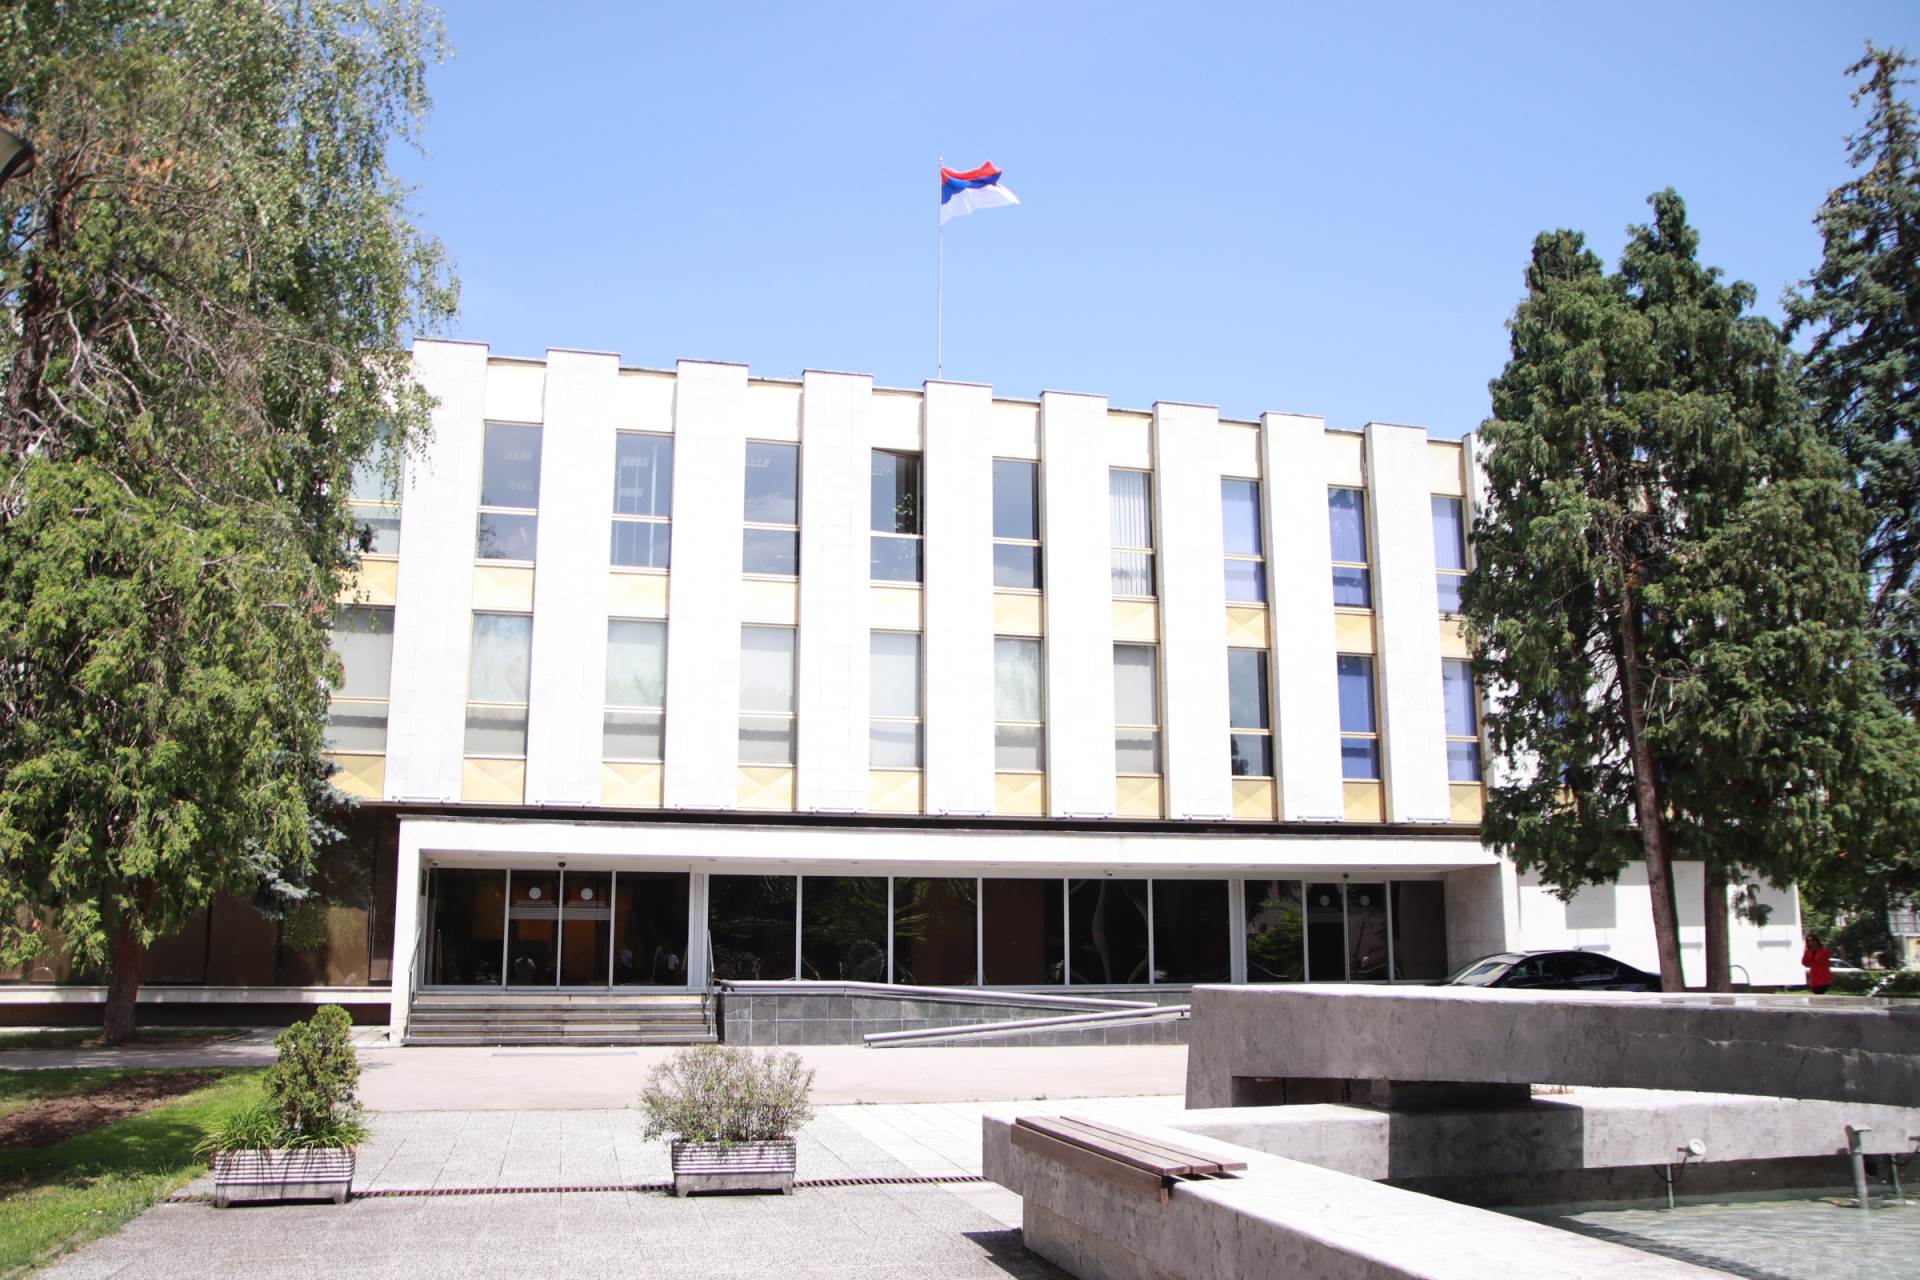  sjednica o usaglašavanja Izbornog zakona Republike Srpske i Zakona o referendumu 